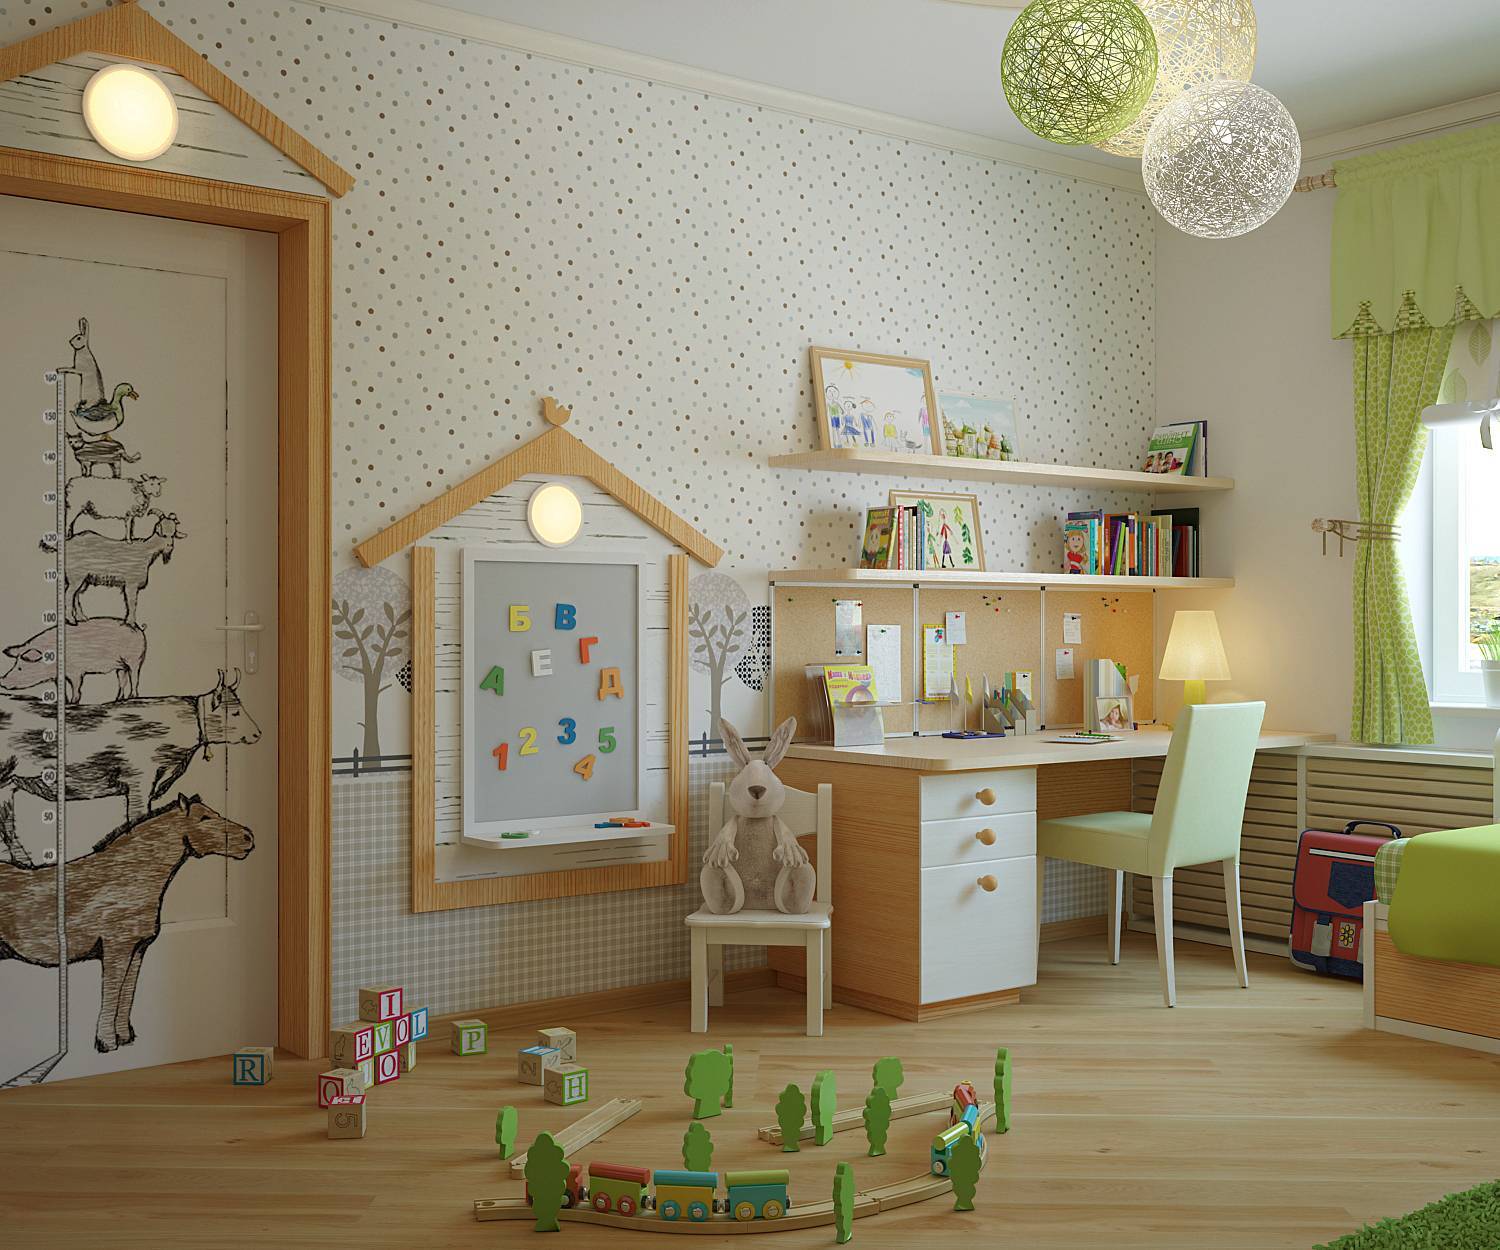 Дизайн детской комнаты: советы по обустройству, идеи оформления интерьера, как подобрать мебель, освещение и декор, какими сделать стены и потолок, фото примеры